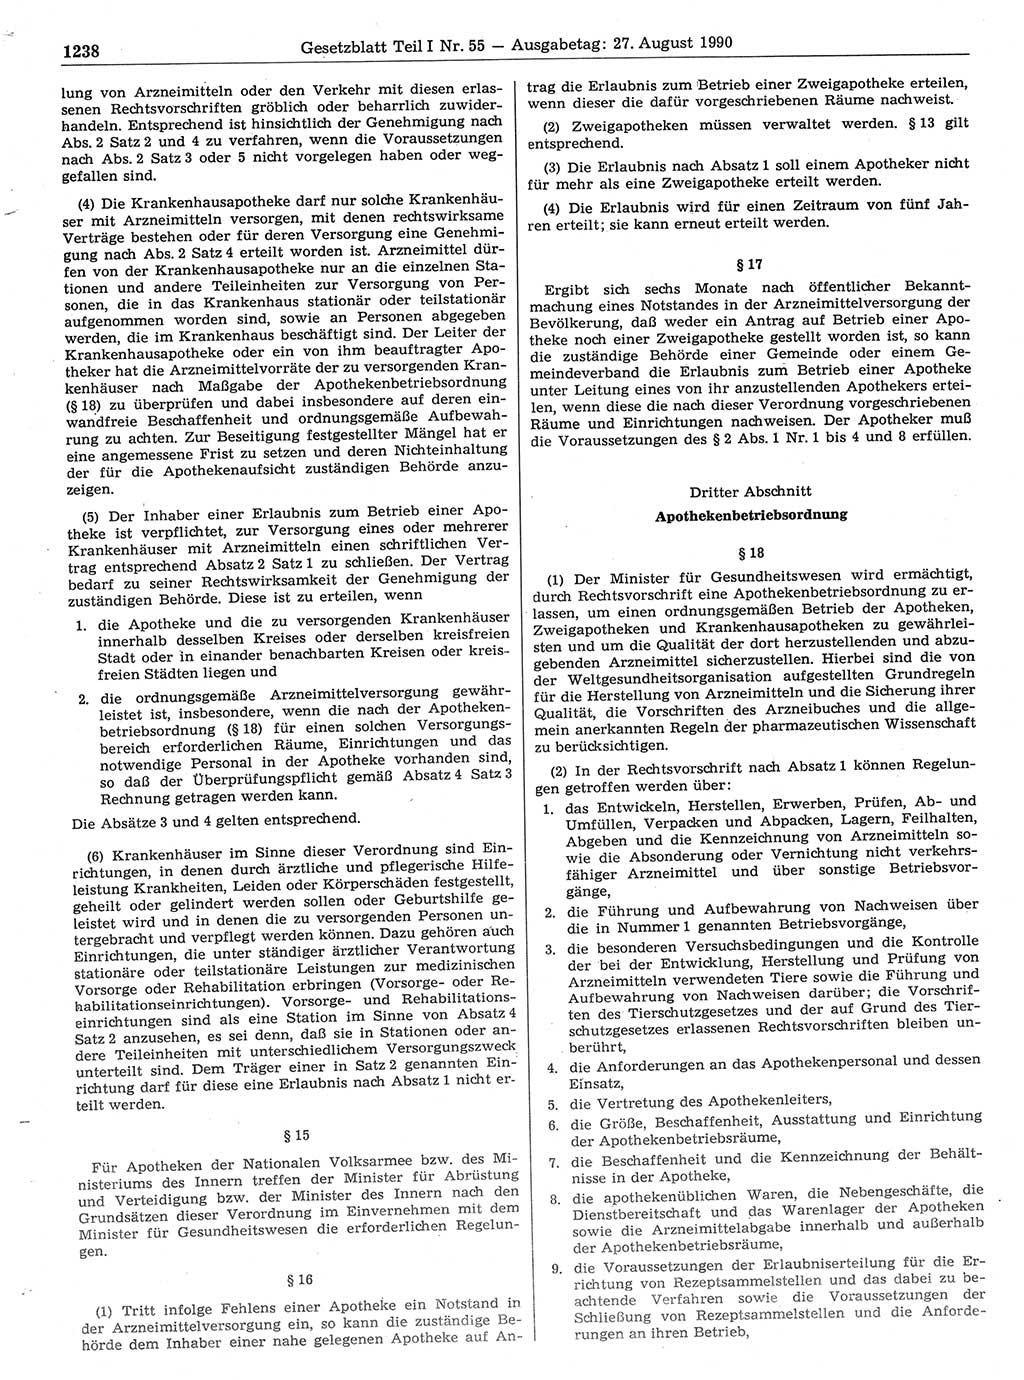 Gesetzblatt (GBl.) der Deutschen Demokratischen Republik (DDR) Teil Ⅰ 1990, Seite 1238 (GBl. DDR Ⅰ 1990, S. 1238)